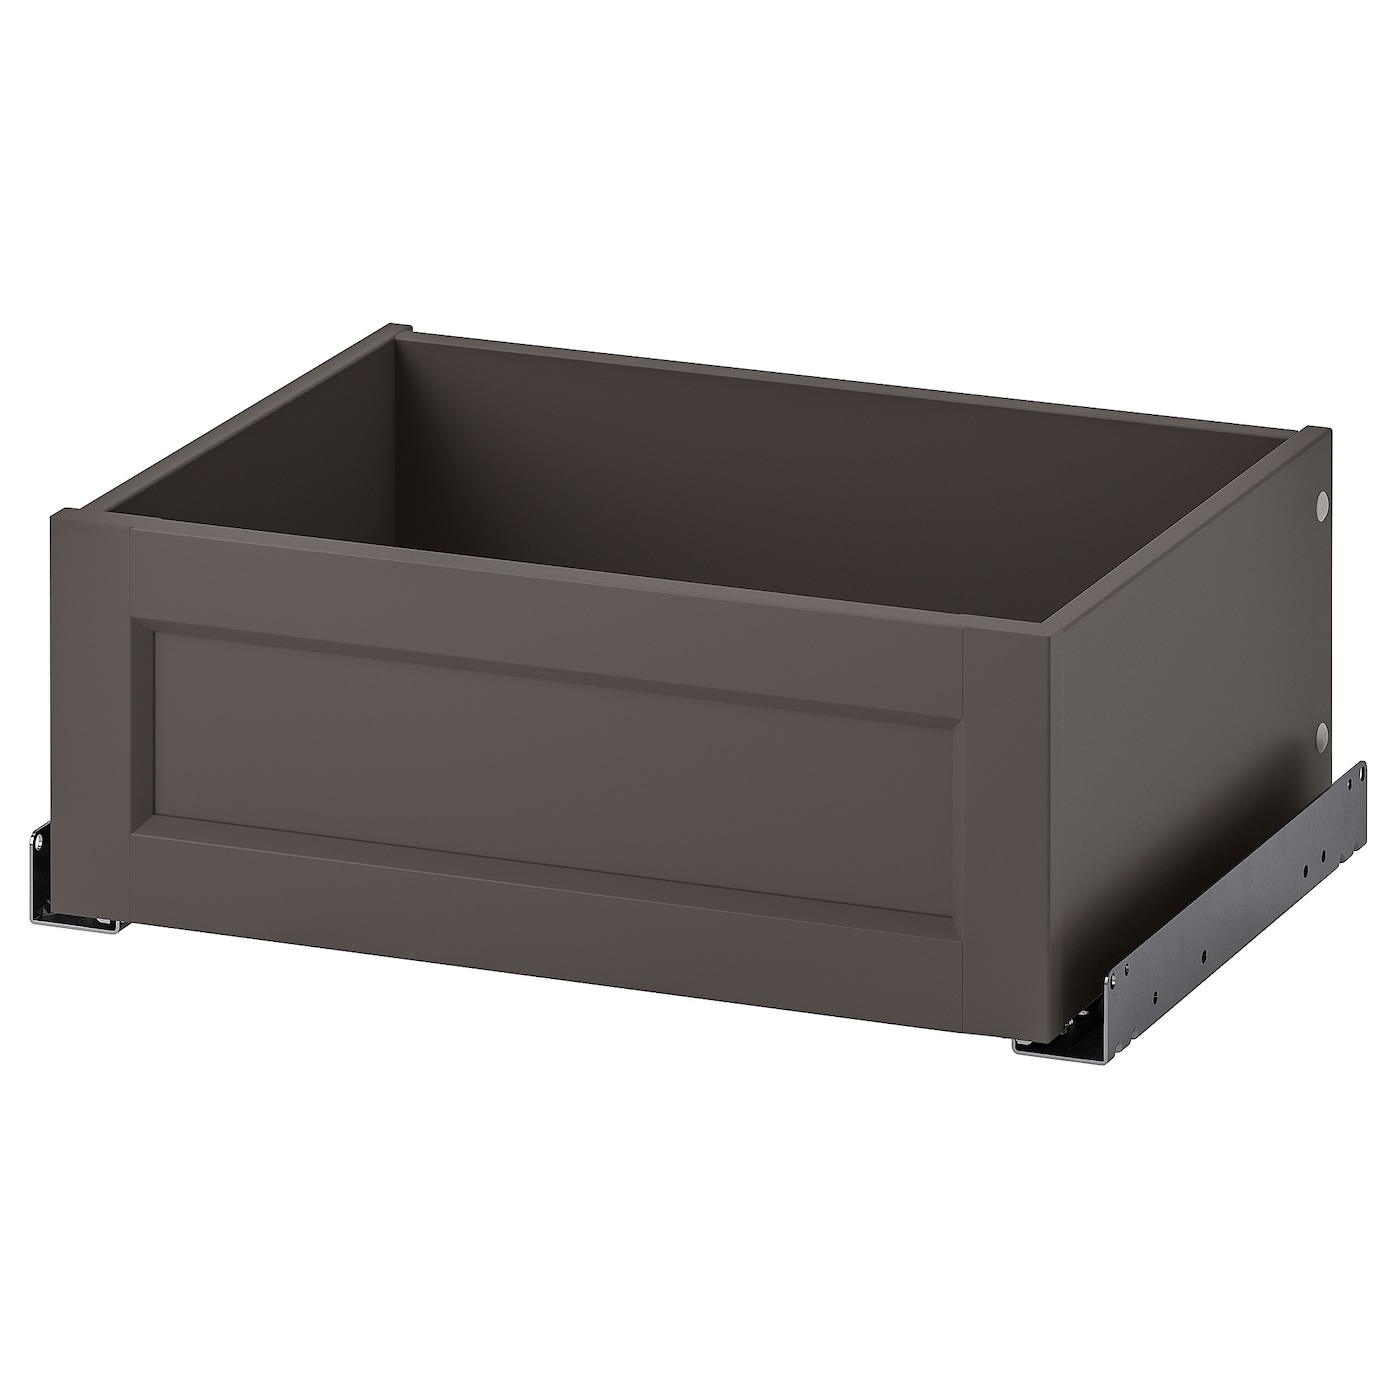 Ящик с фронтальной панелью - IKEA KOMPLEMENT, 50x35 см, темно-серый КОМПЛИМЕНТ ИКЕА